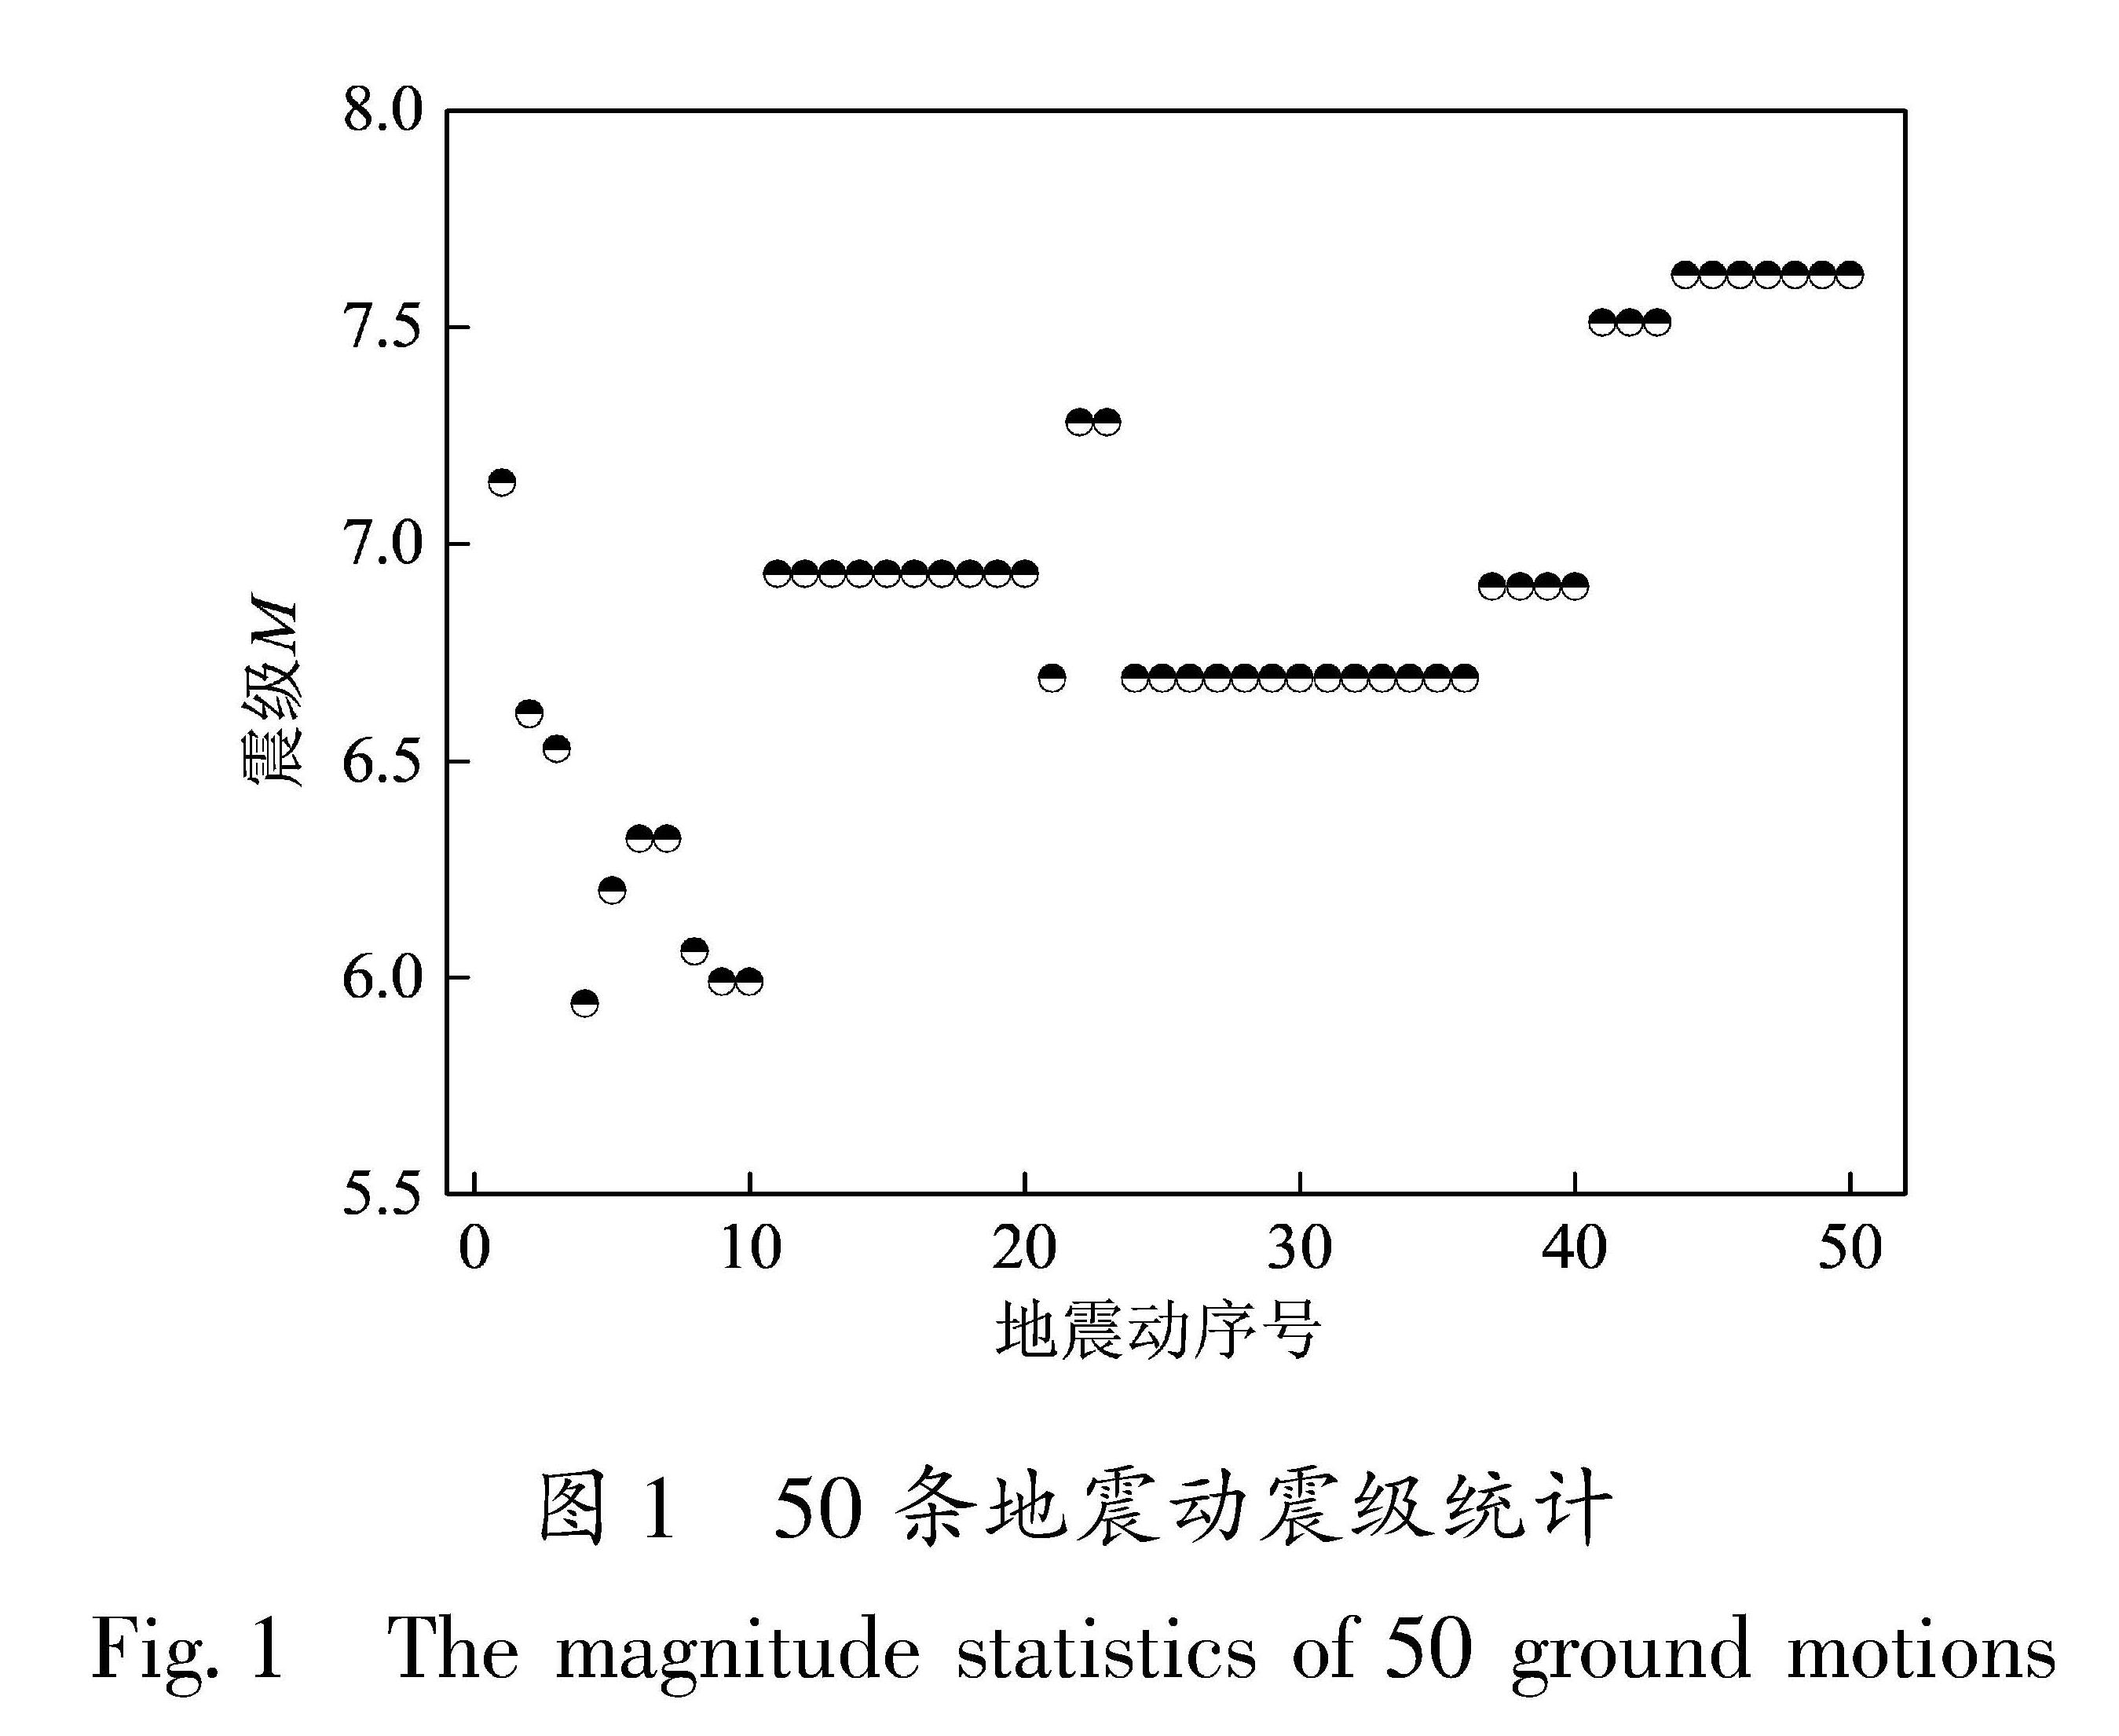 图1 50条地震动震级统计<br/>Fig.1 The magnitude statistics of 50 ground motions